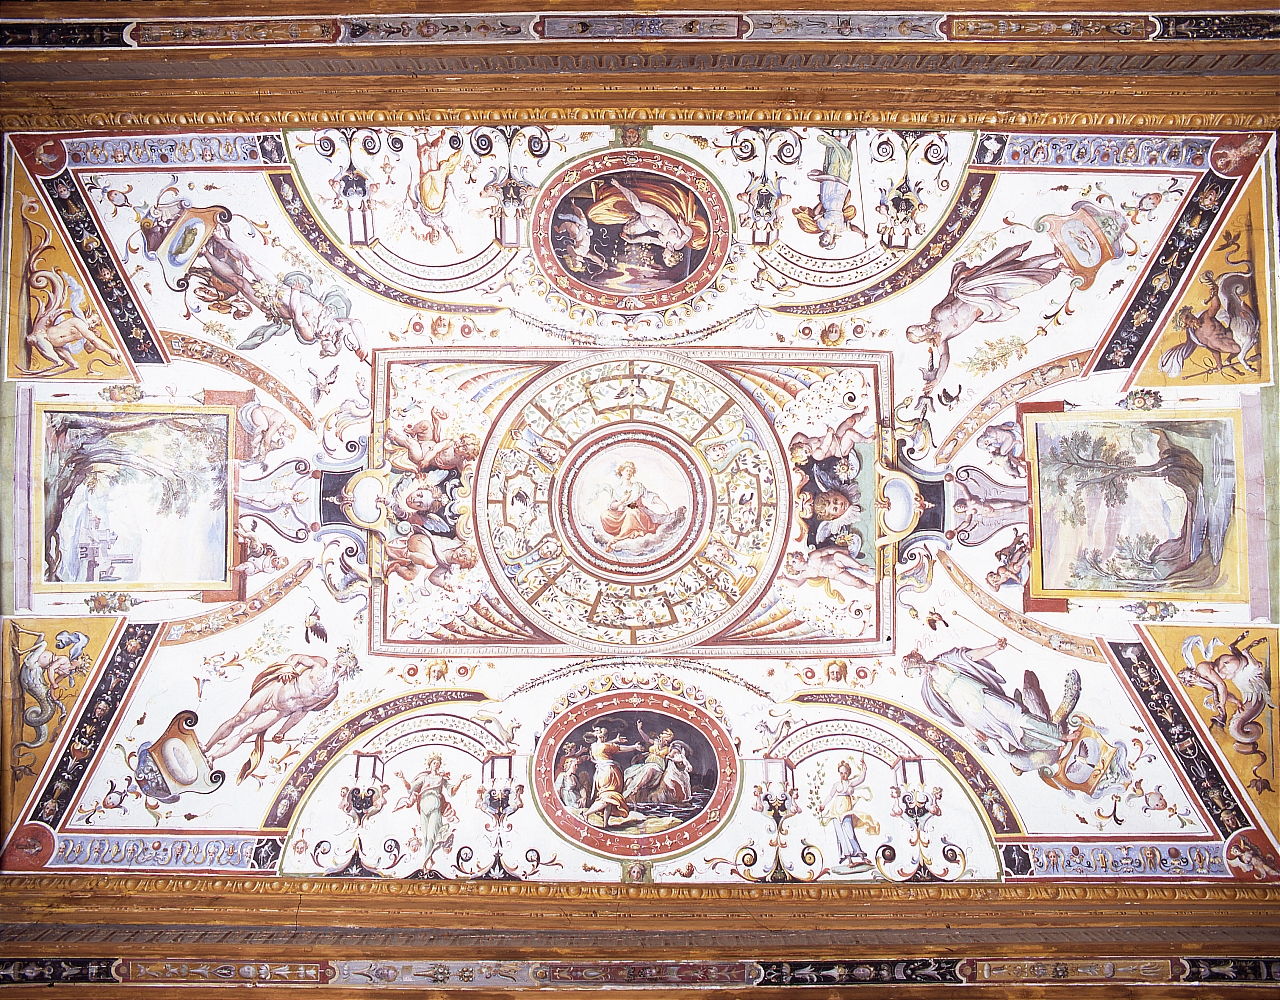 motivi decorativi a grottesche con scene mitologiche, figure allegoriche e paesaggi (soffitto dipinto) di Tempesta Antonio (attribuito) (sec. XVI)